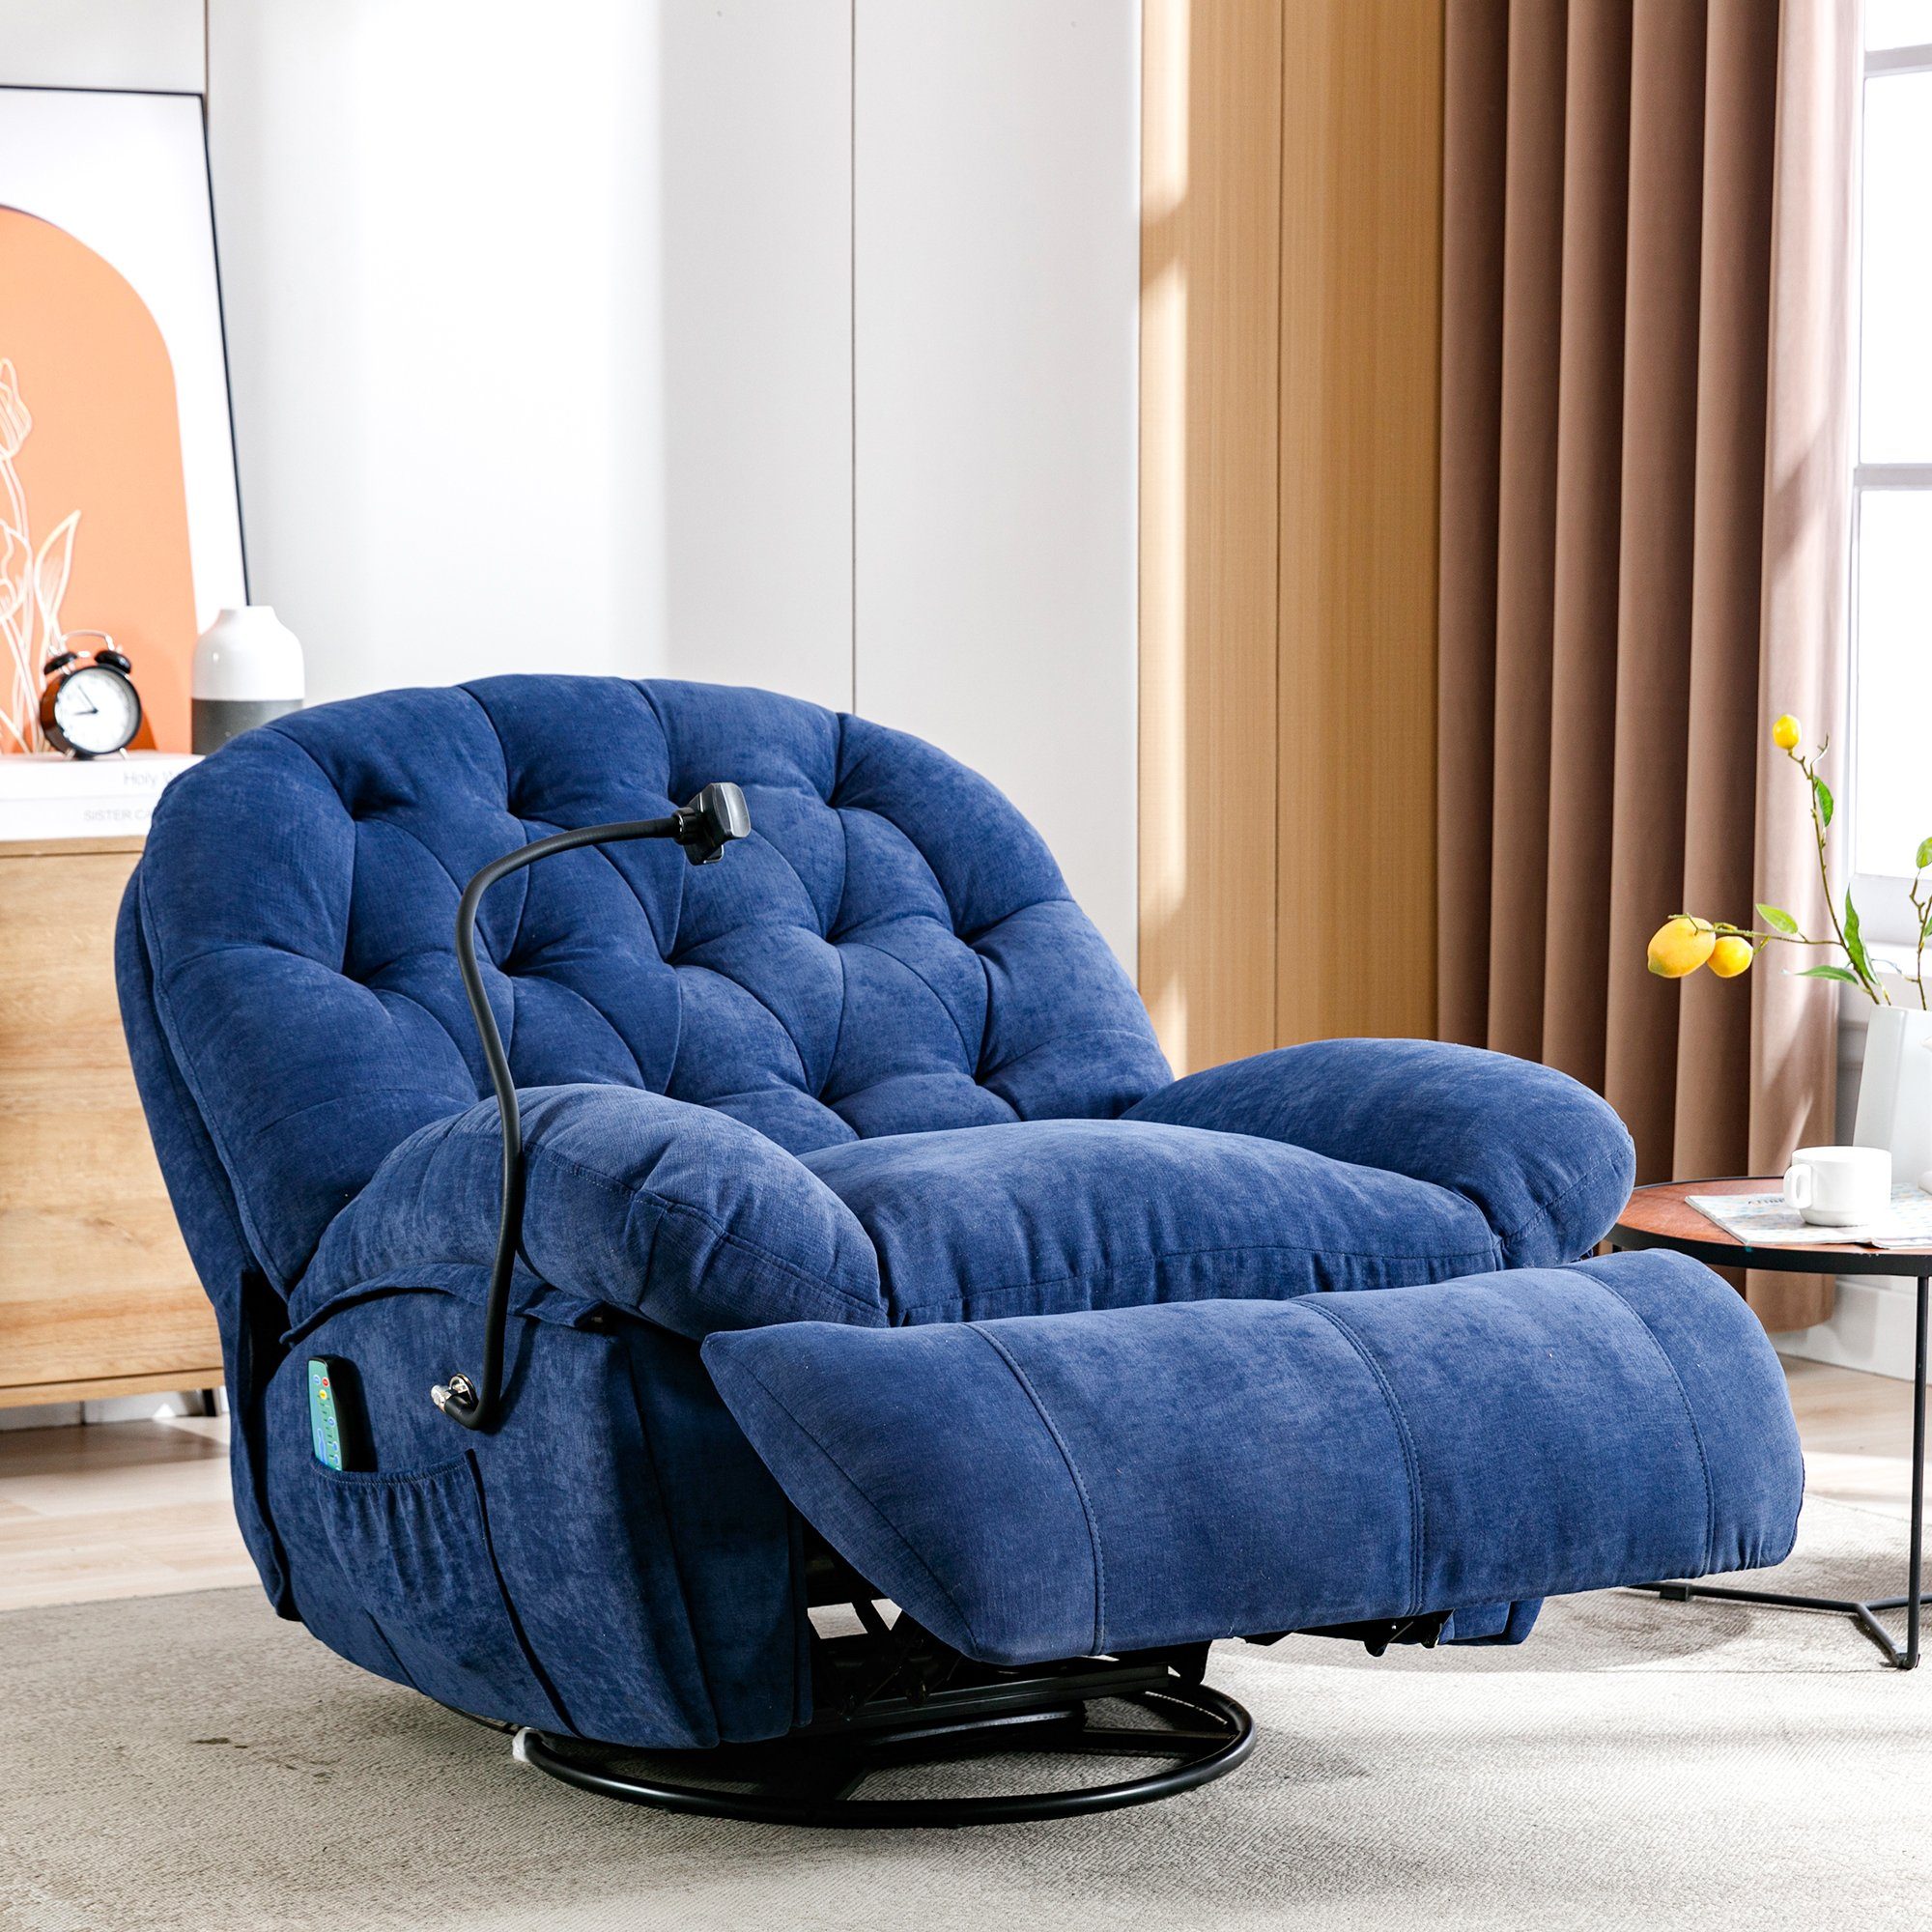 Merax TV-Sessel mit Vibration und Wärmefunktion, Relaxsessel mit Fernbedienung, Massagesessel mit 360° Drehfunktion und Timer, Fernsehsessel Blau